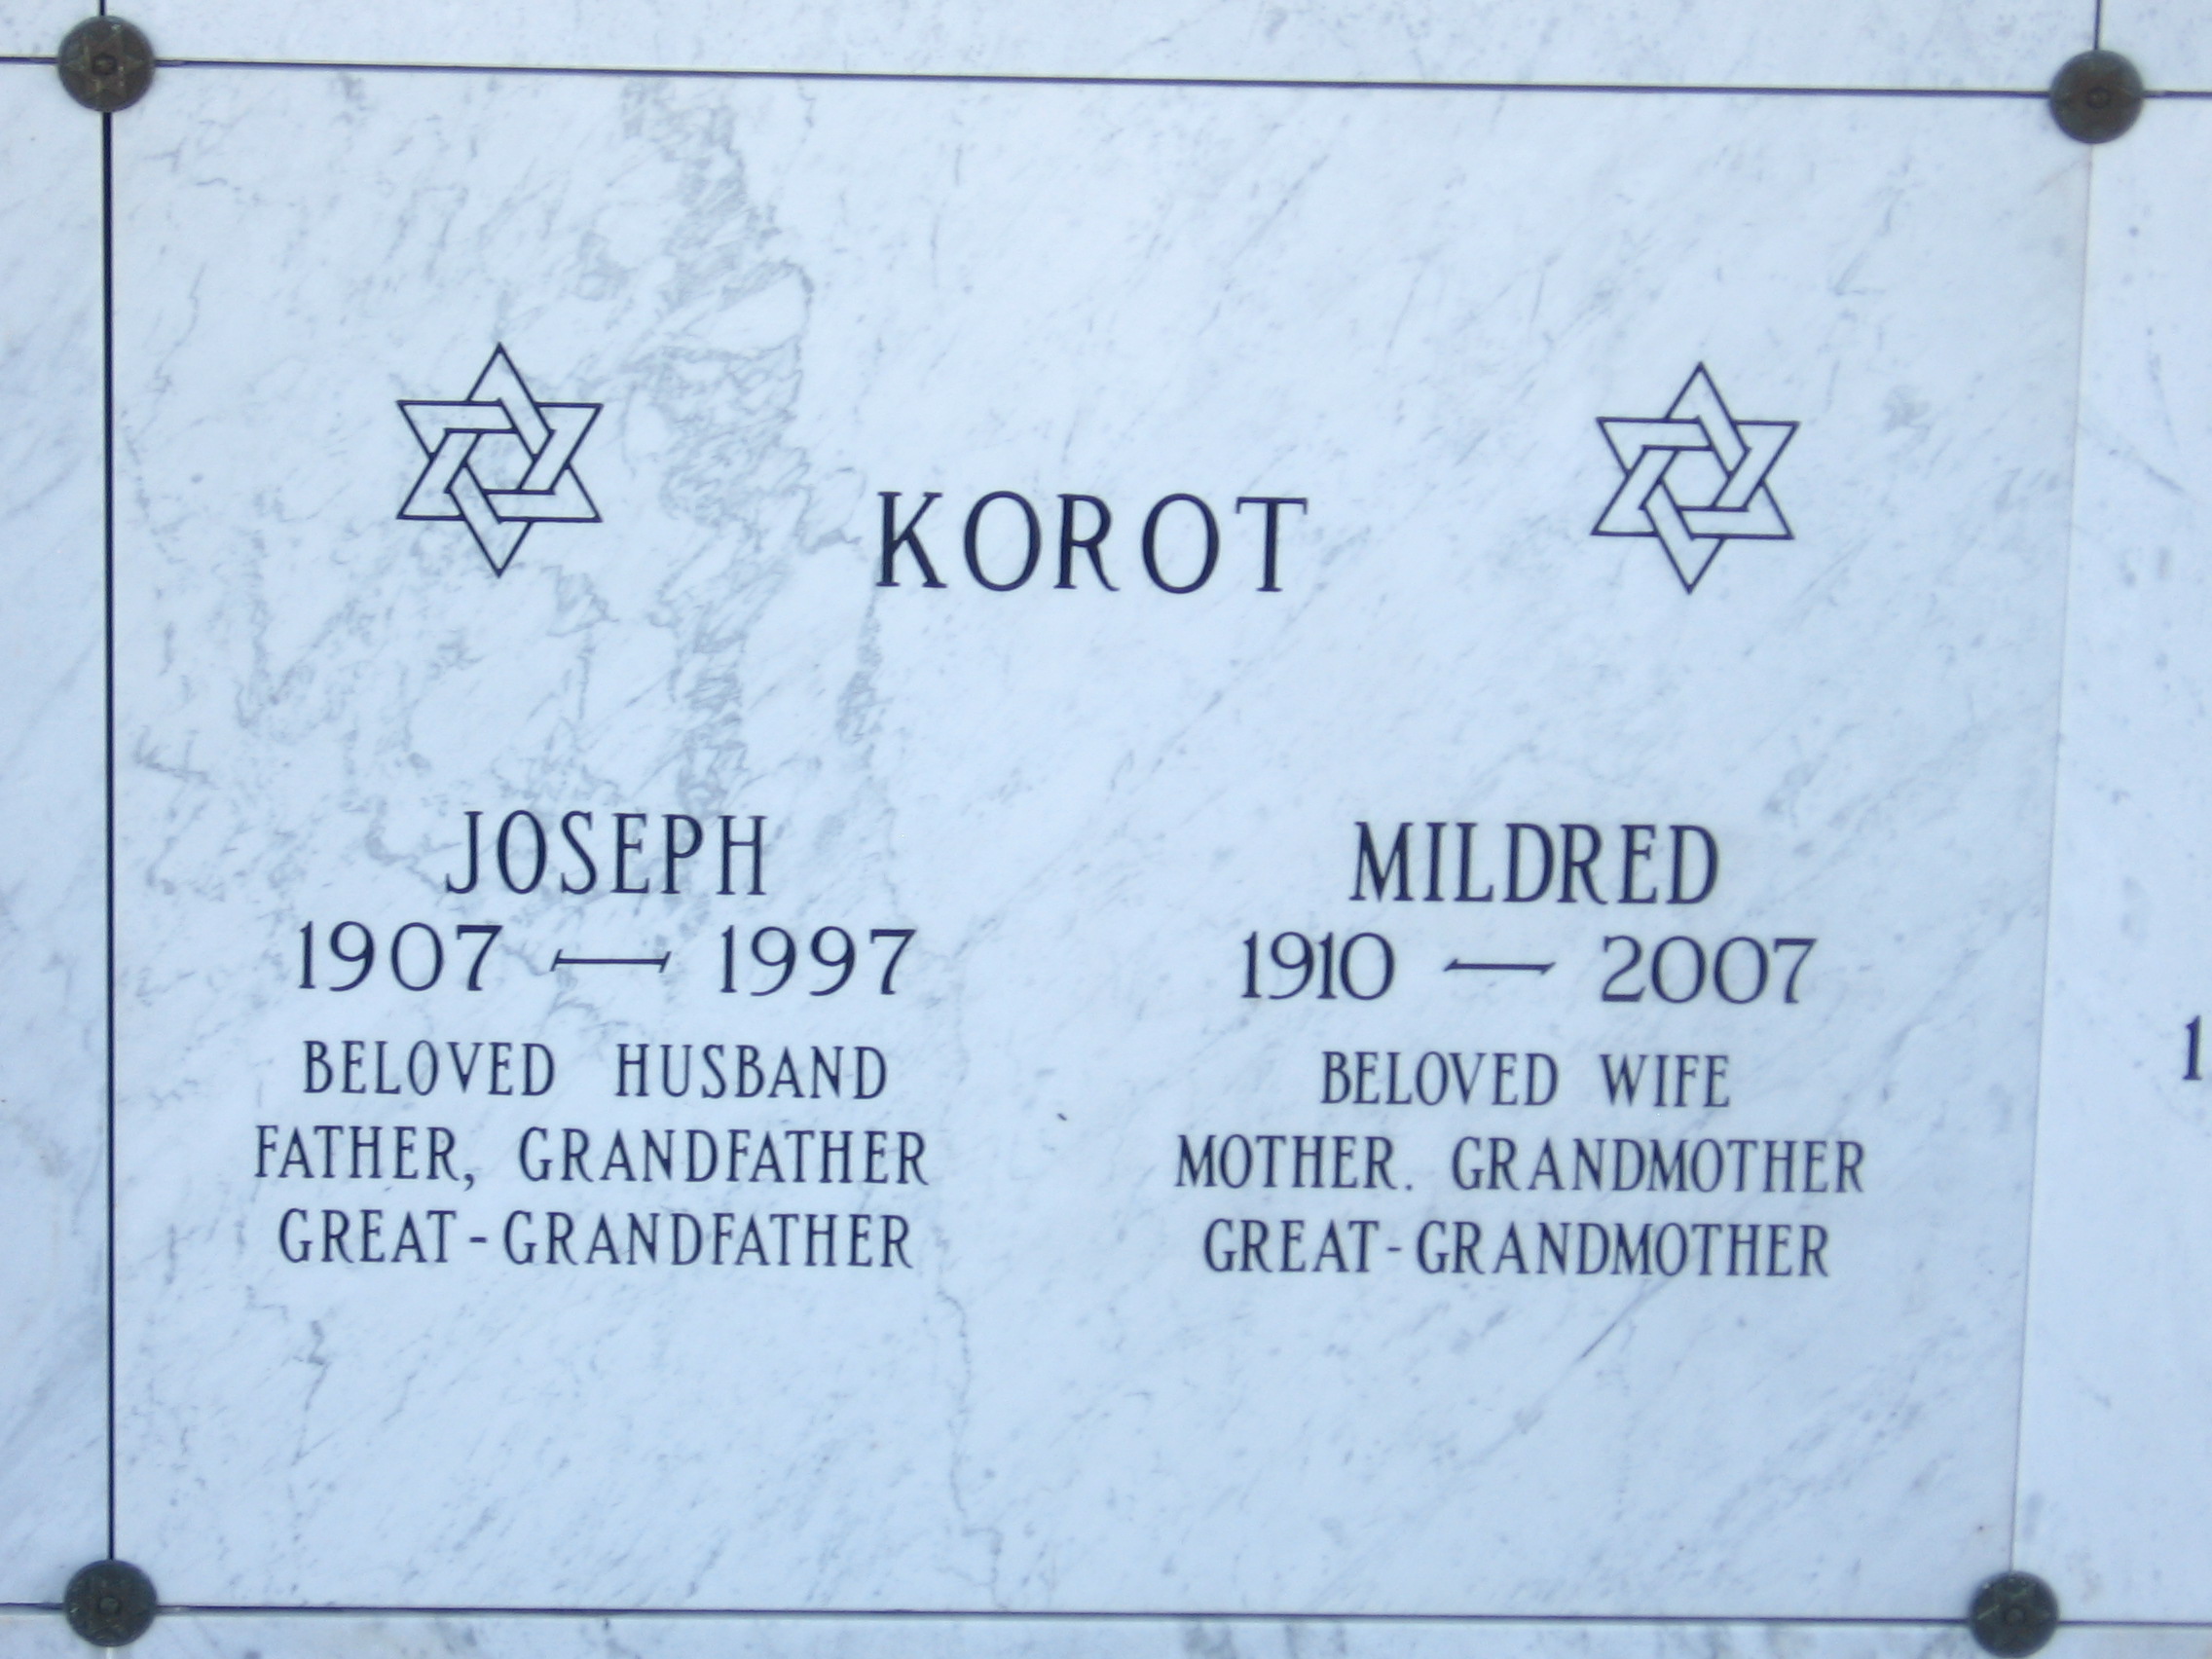 Joseph Korot